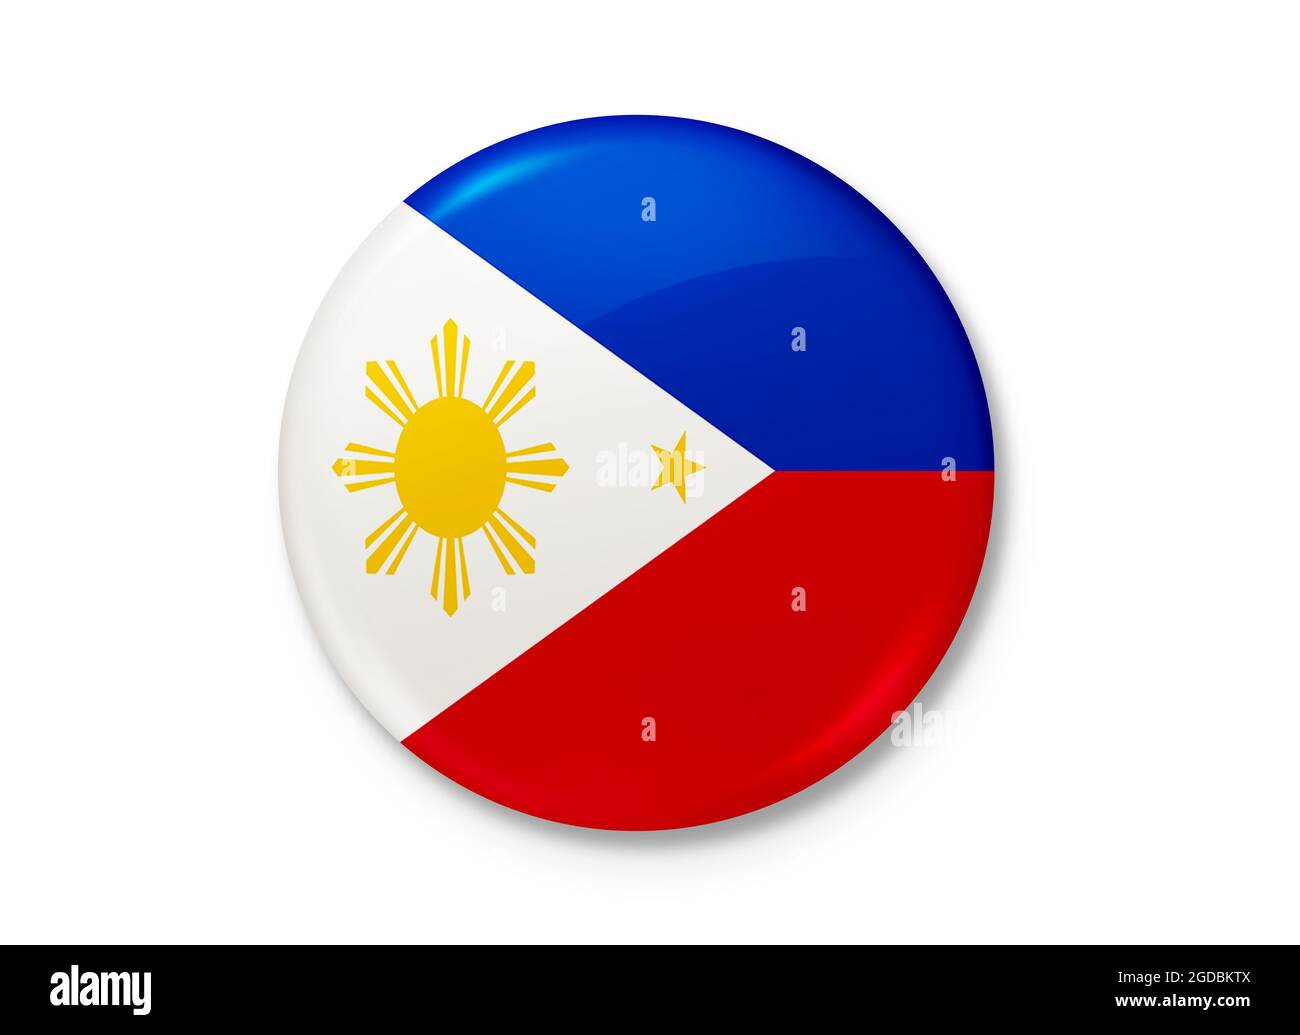 République des Philippines. Texture d'arrière-plan. Manille, Grand Manille, Quezon City. Illustration 3d. Rendu 3d. Banque D'Images